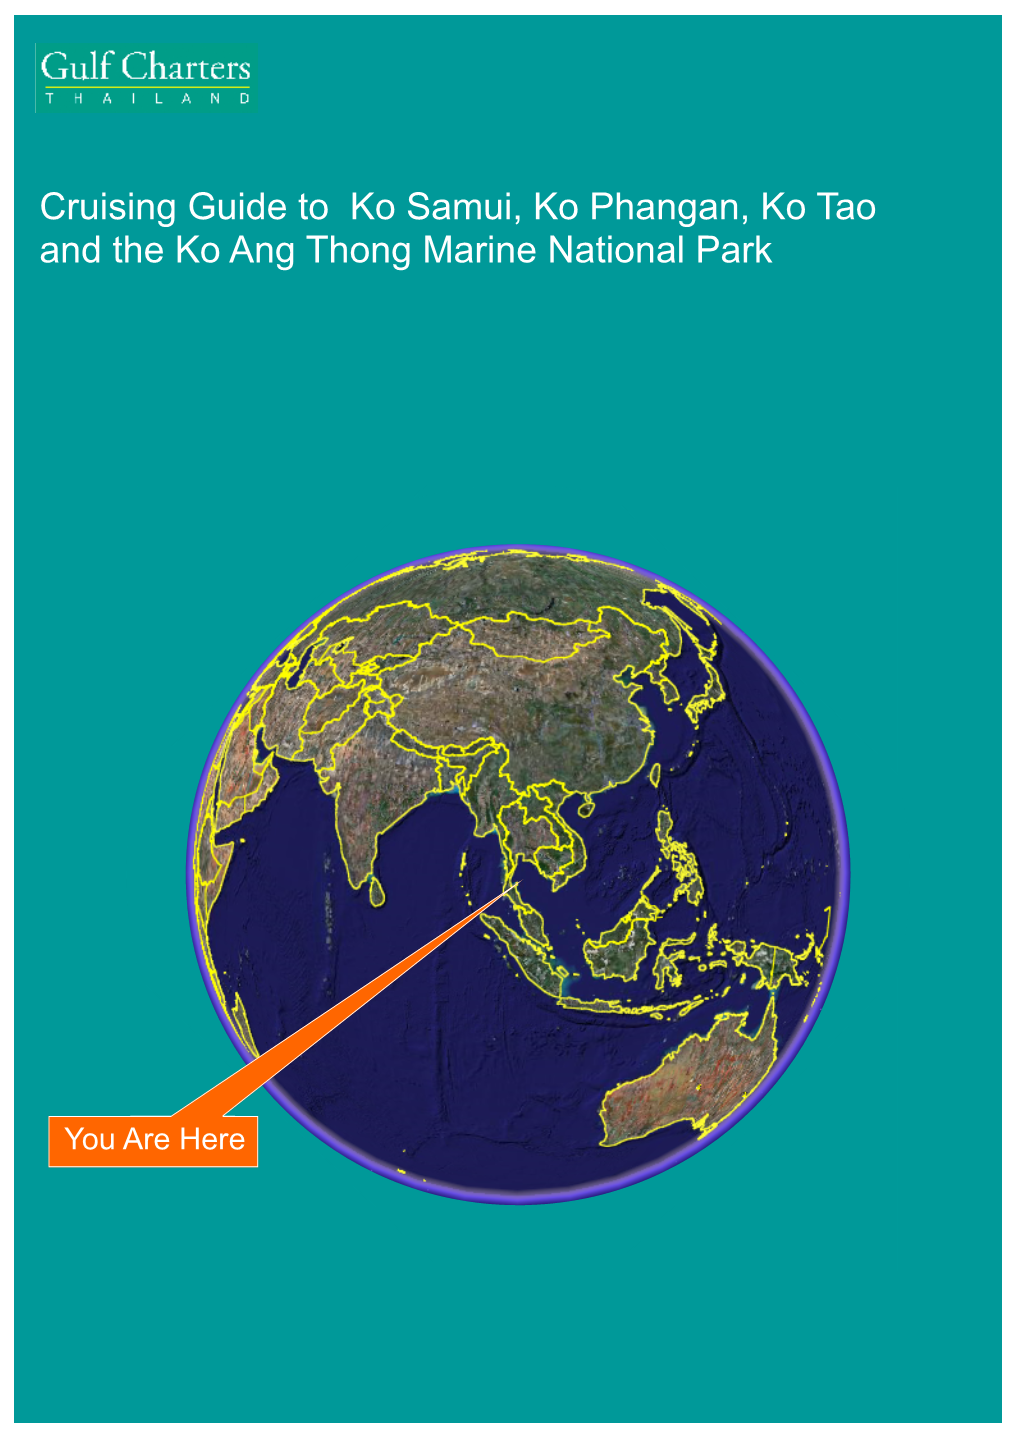 Cruising Guide to Ko Samui, Ko Phangan, Ko Tao and the Ko Ang Thong Marine National Park